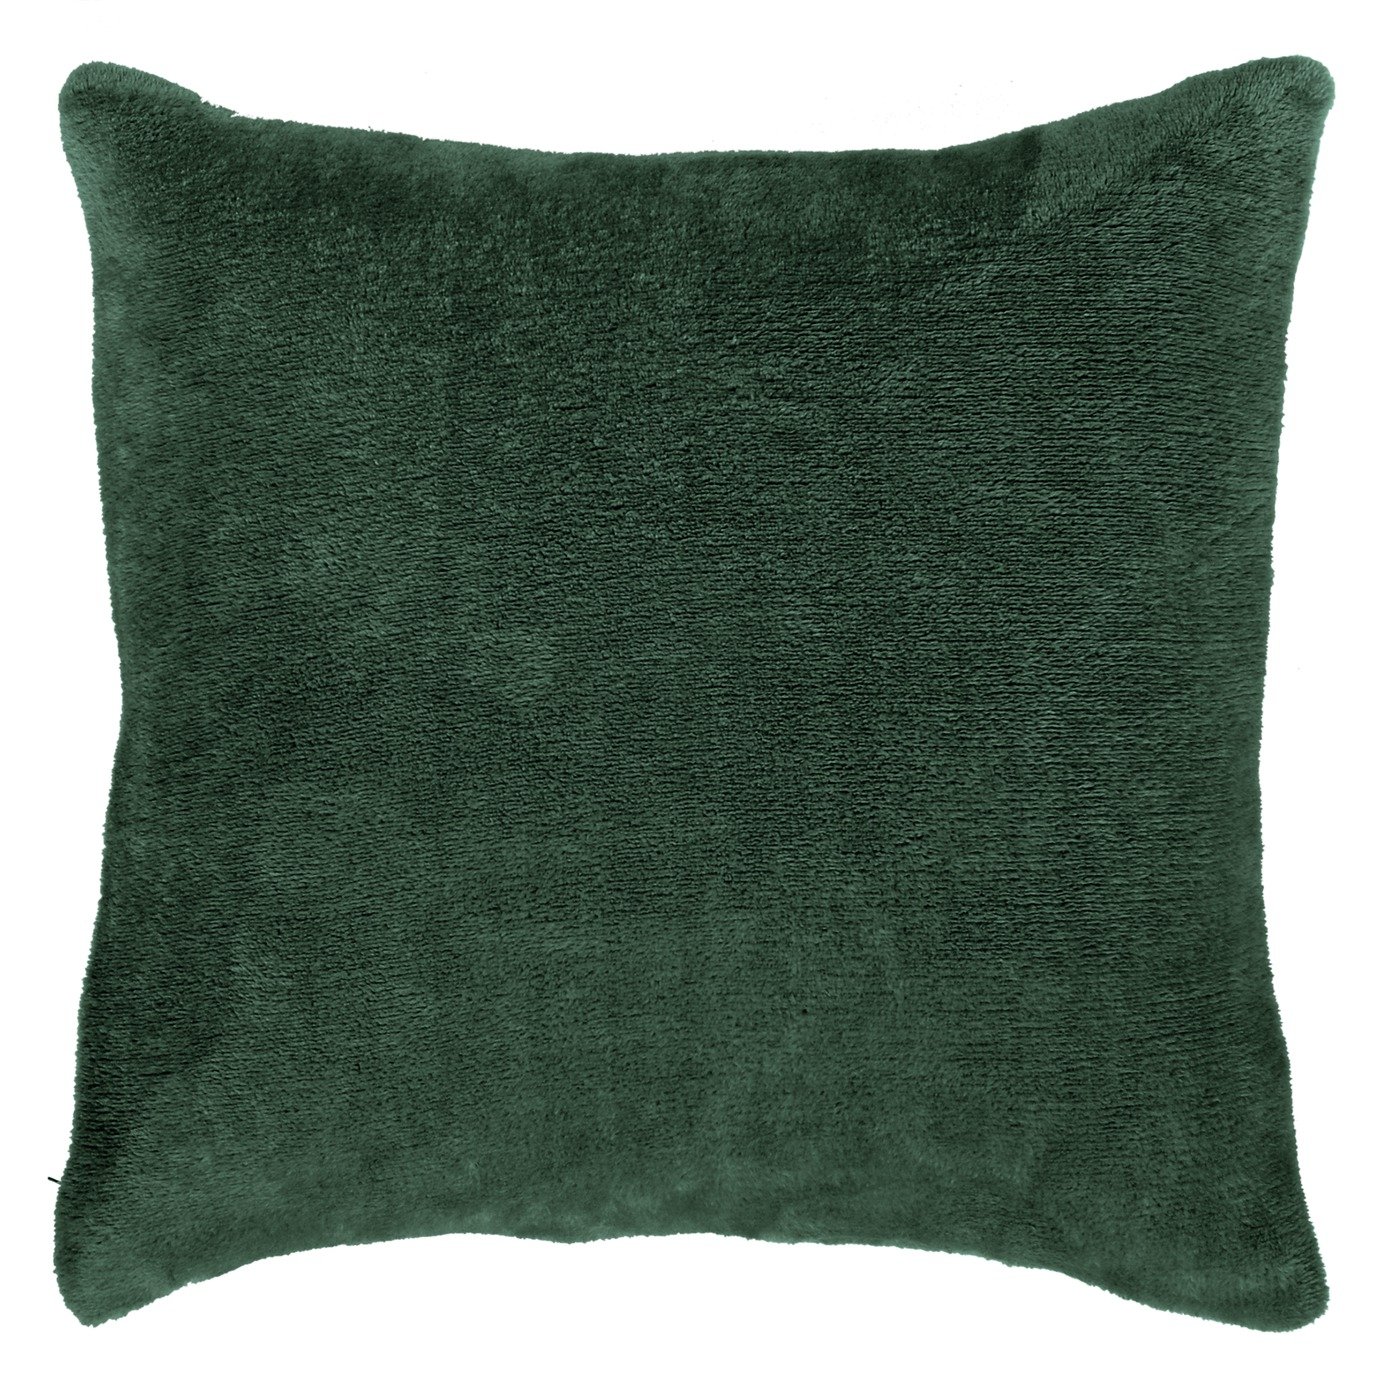 Argos Home Plain Super Soft Fleece Cushion - Green - 43x43cm